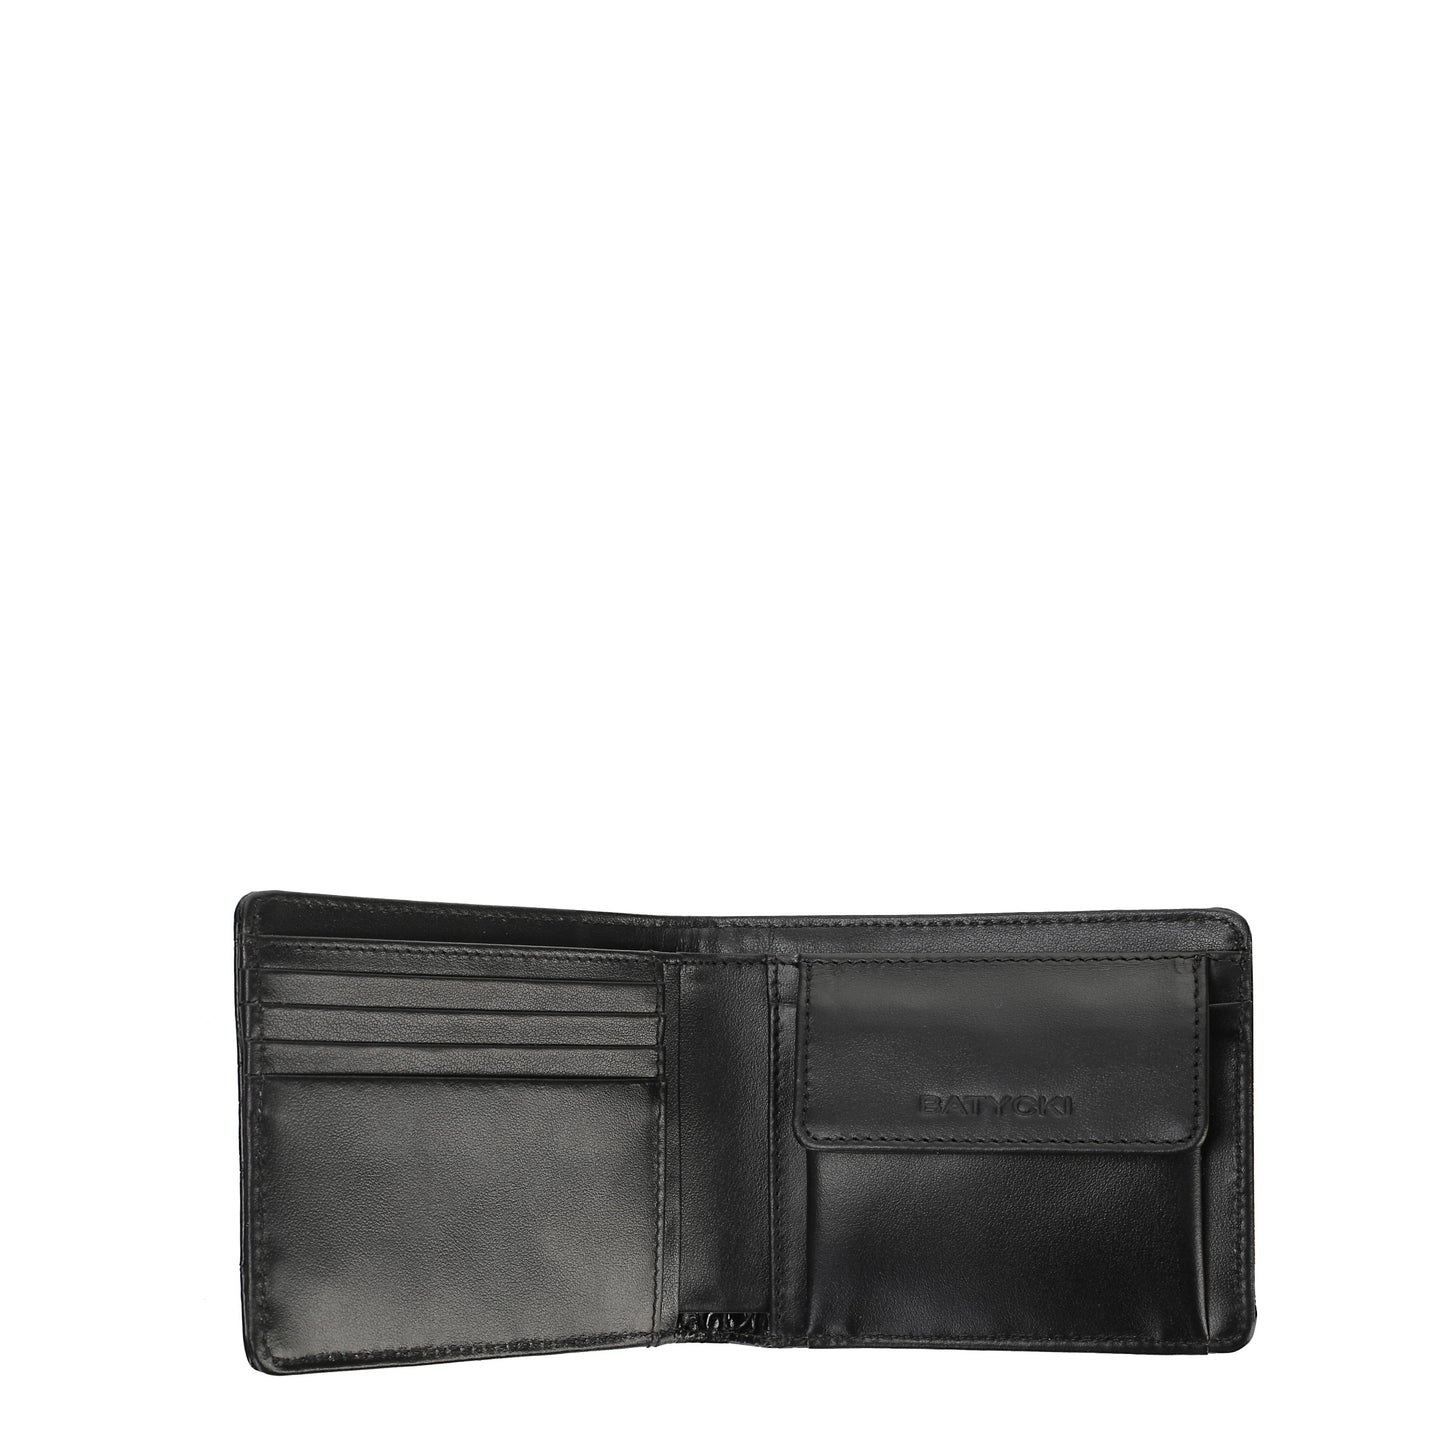 Croco black men's leather wallet